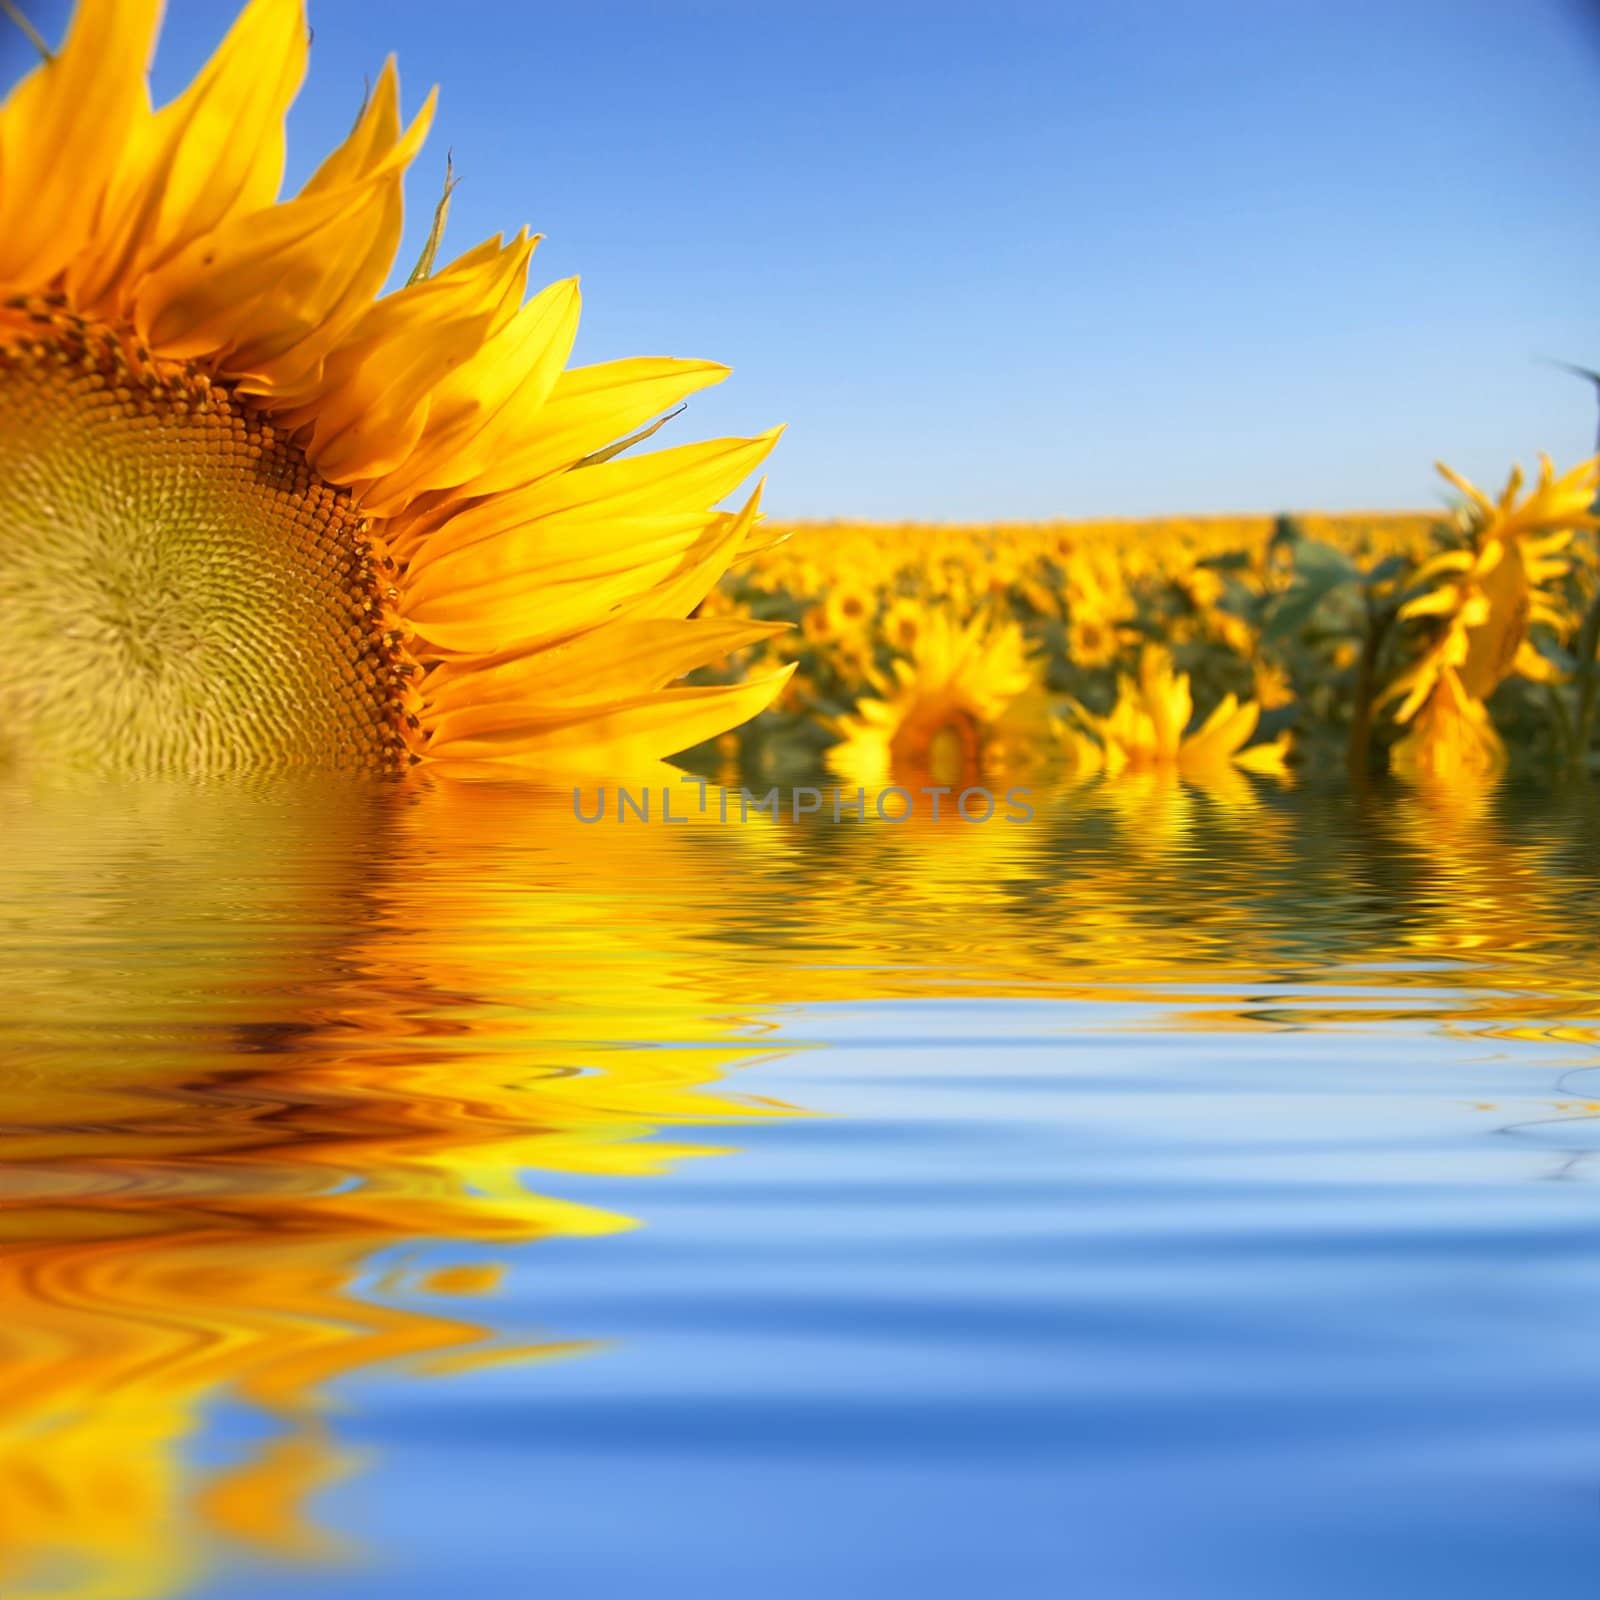 Sunflowers by velkol